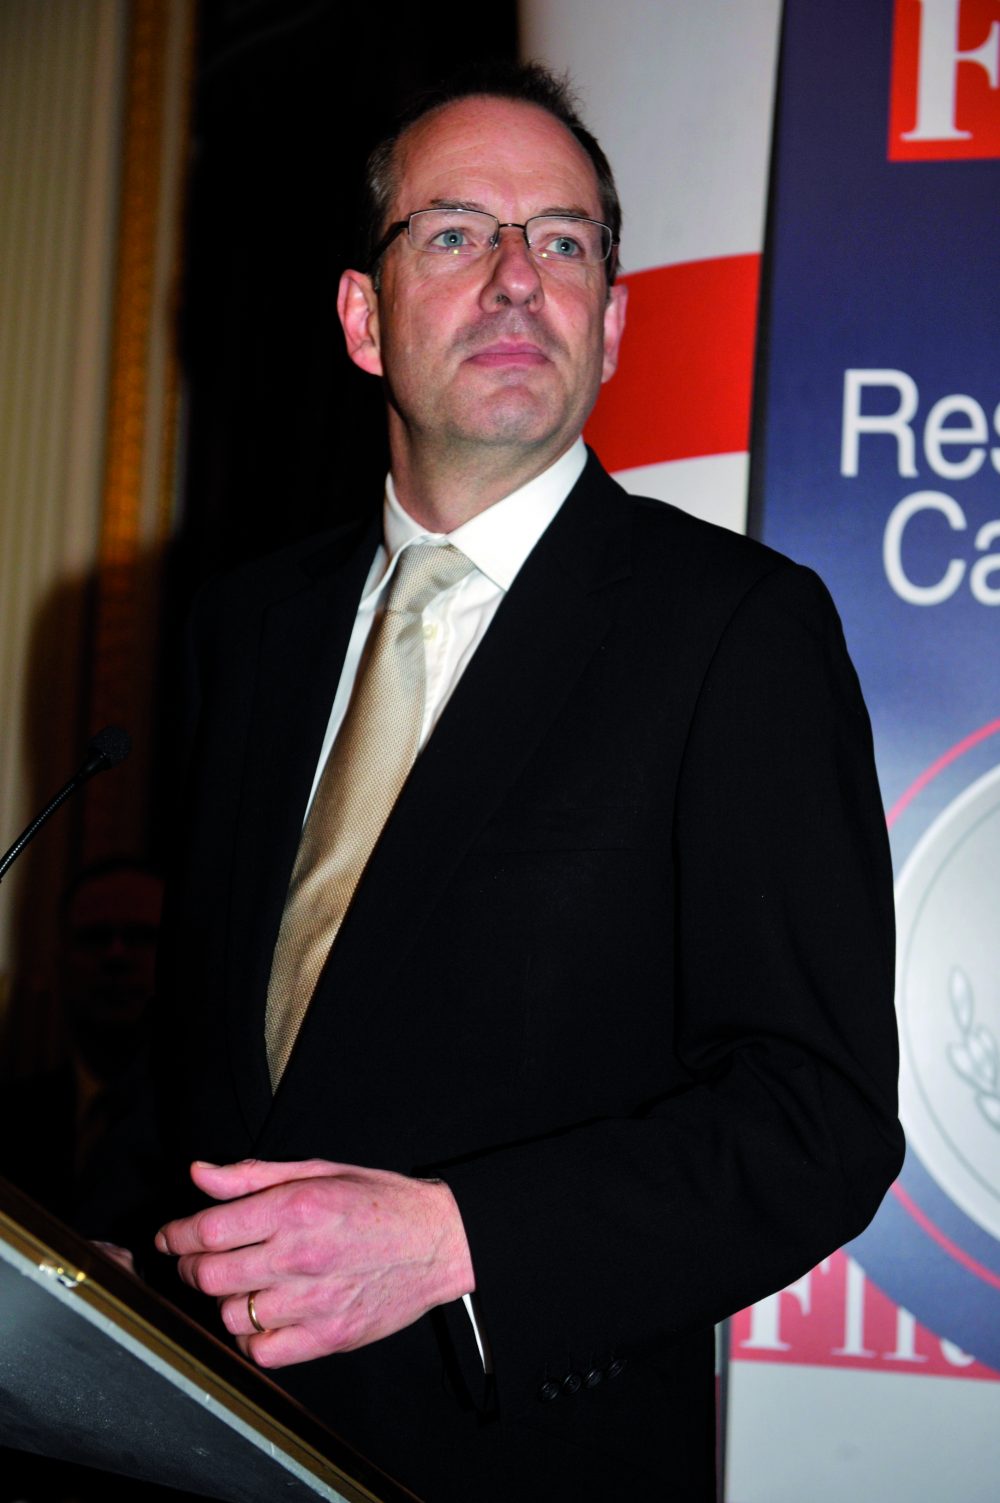 Andrew Witty, CEO of GlaxoSmithKline